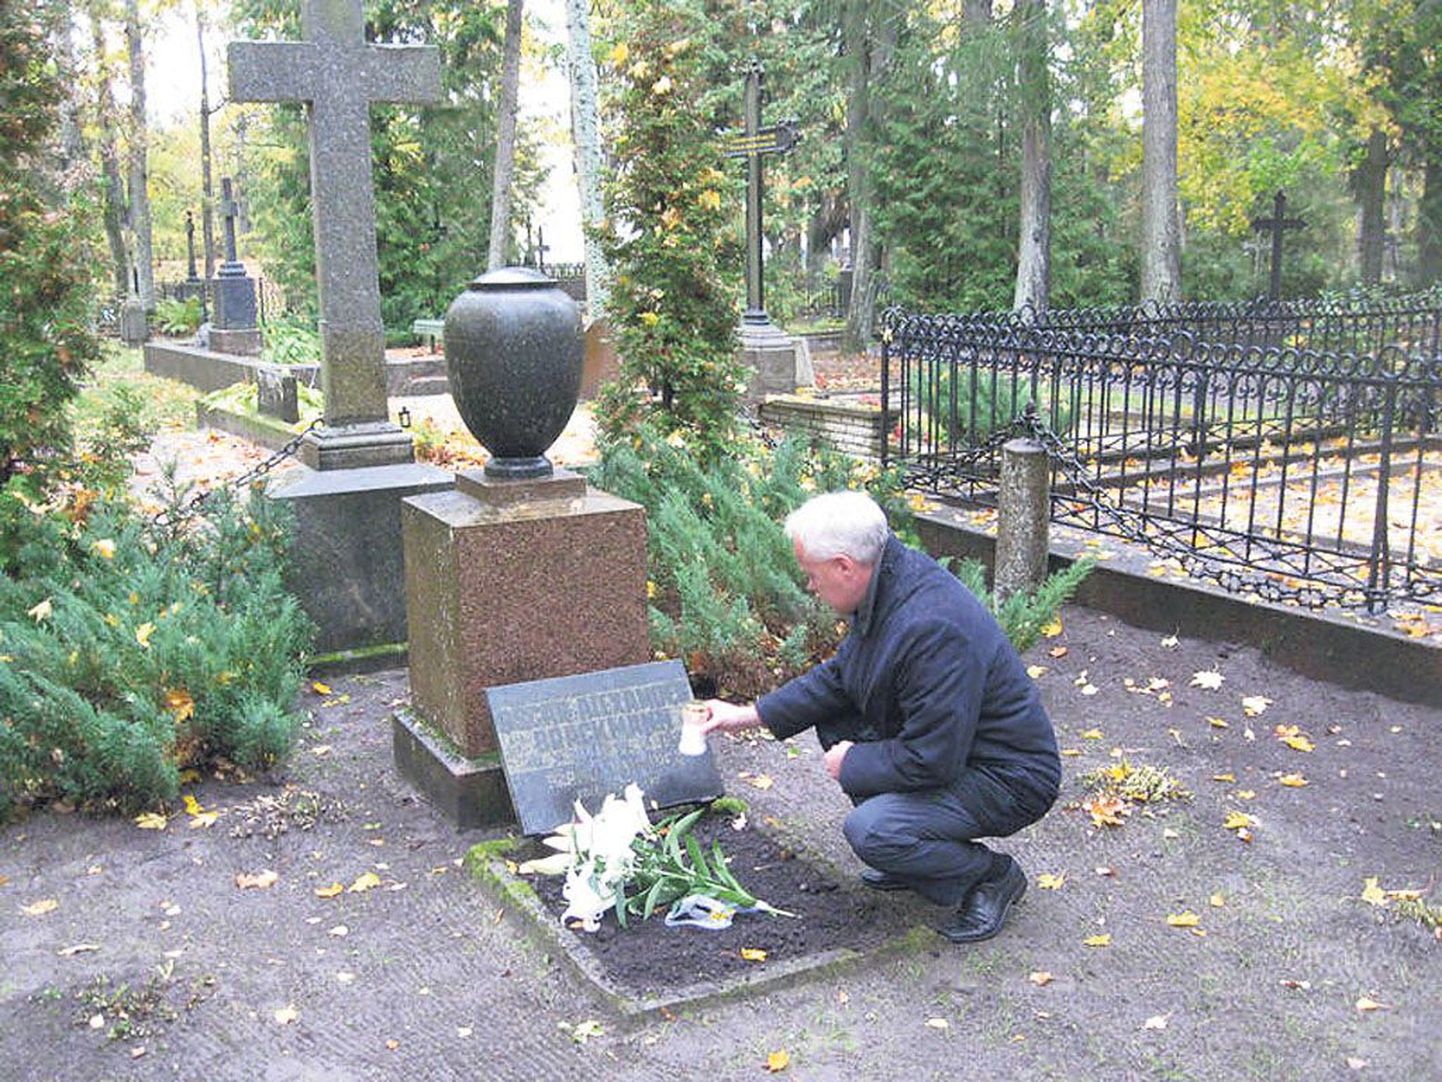 Pärnu praegune linnapea Toomas Kivimägi süütas ammuse ametivenna haual küünla. Mälestustulega meenutati teisigi siinmail puhkavaid Pärnu meere Jaan Leesmenti ja Hendrik Sood.